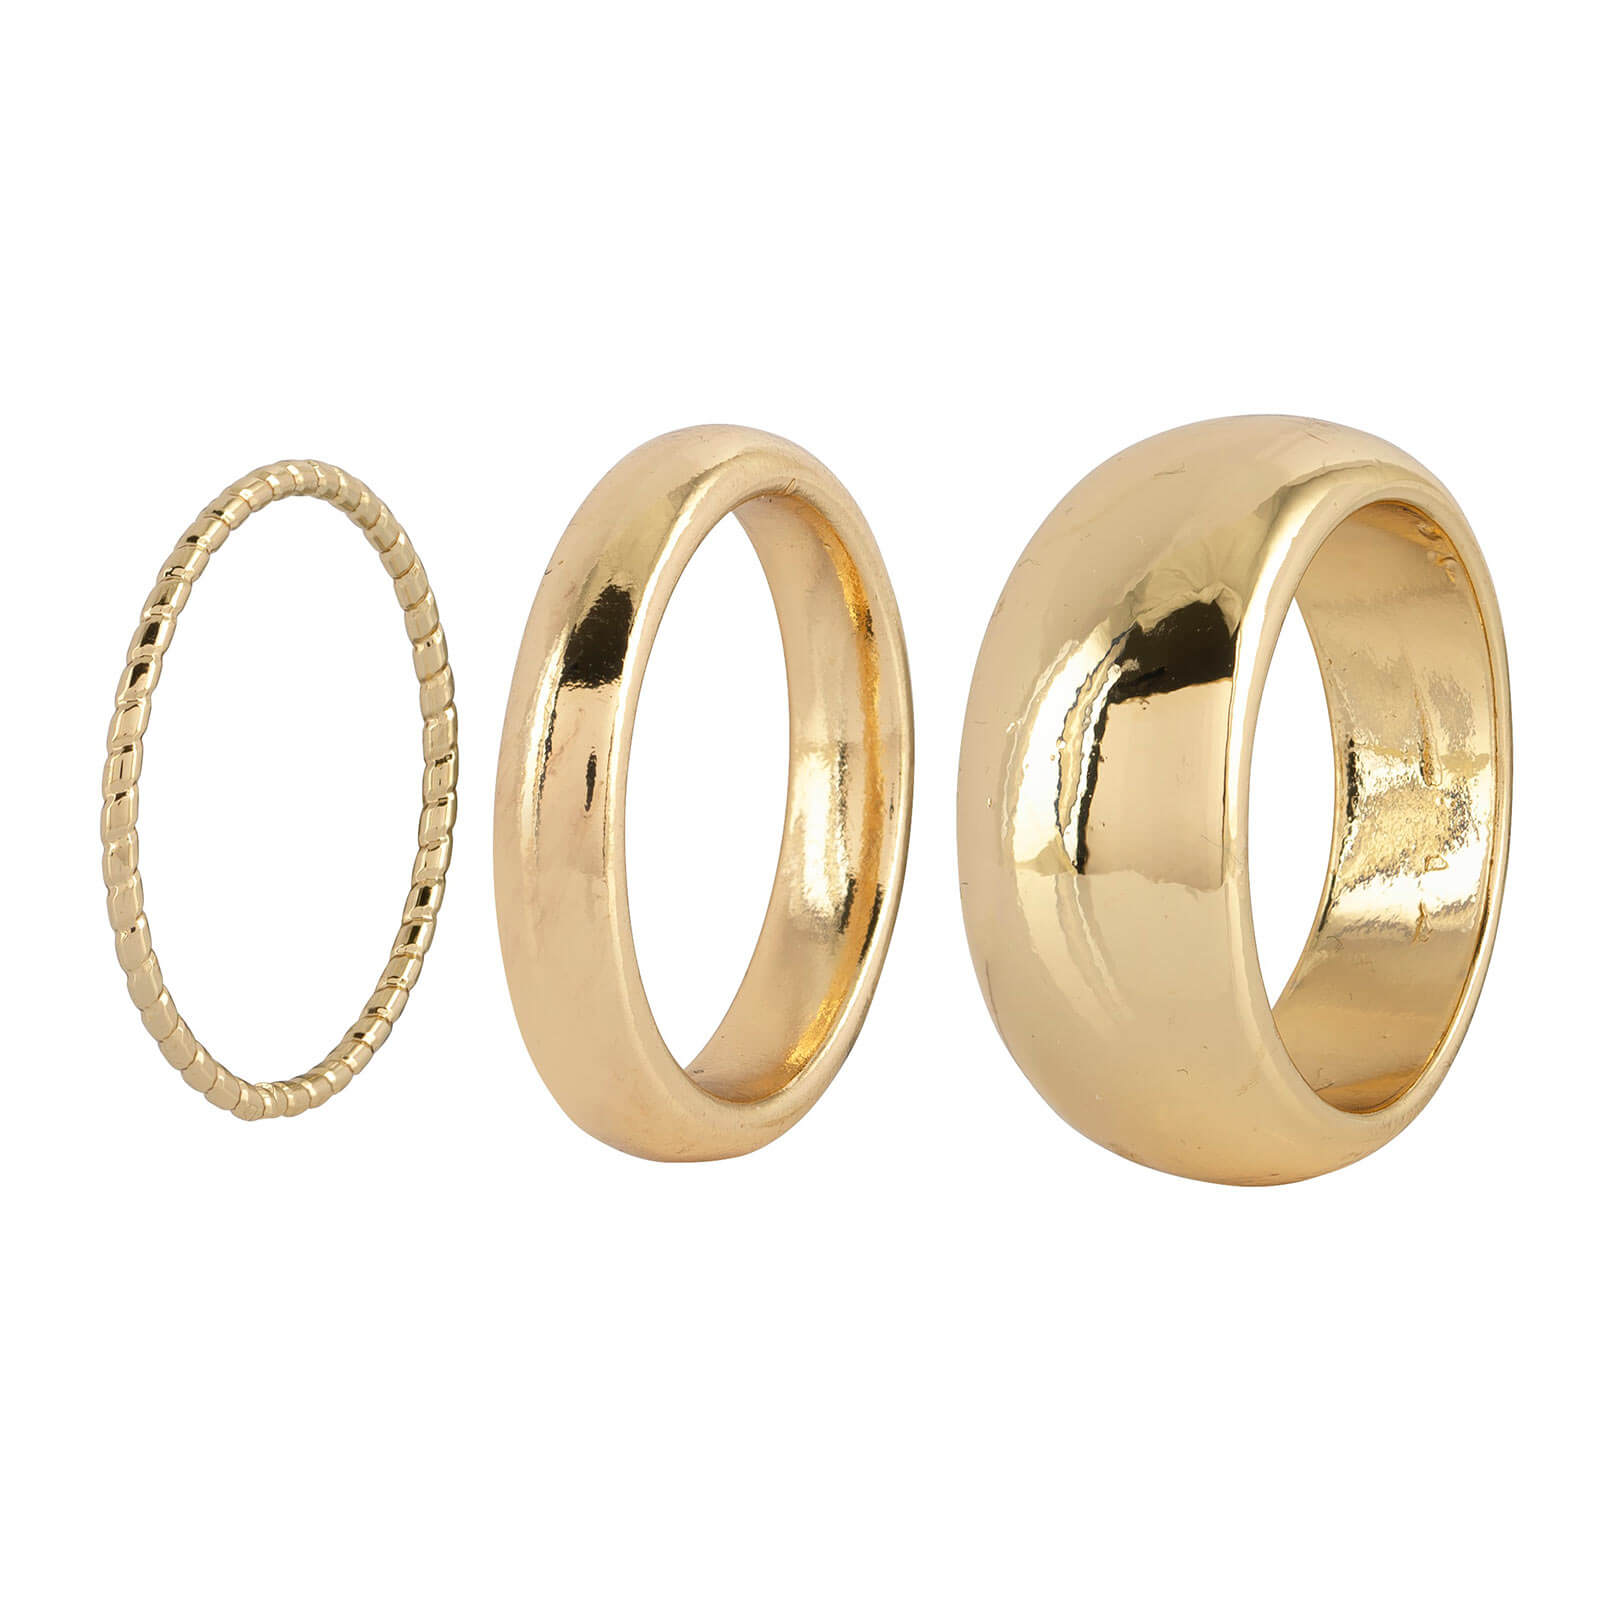 3-pack guldfärgade ringar - olika tjocklekar